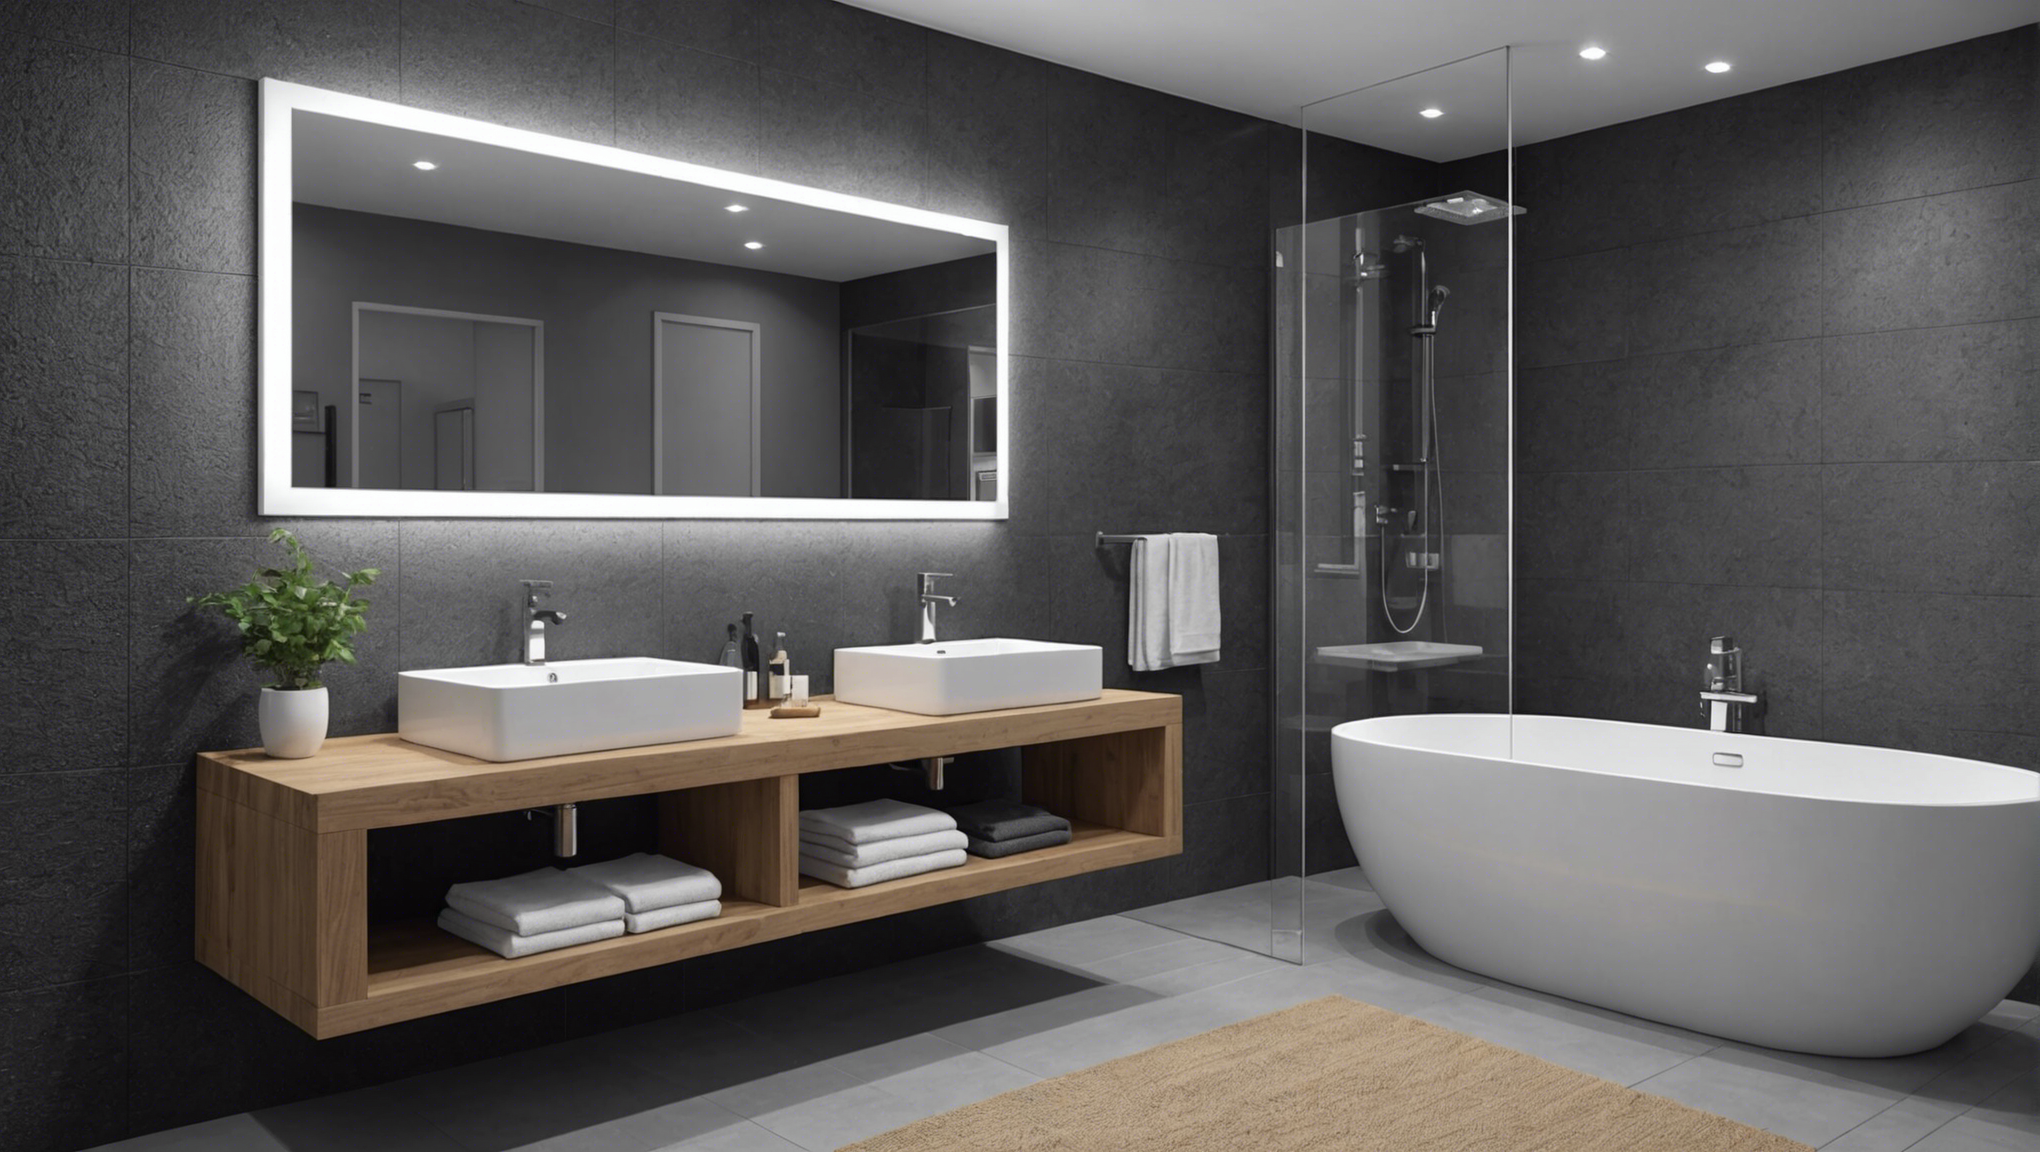 découvrez nos conseils pour choisir le meuble de salle de bain parfaitement adapté à vos besoins et à votre espace. trouvez le juste équilibre entre esthétique, fonctionnalité et praticité, pour une salle de bain qui vous ressemble.